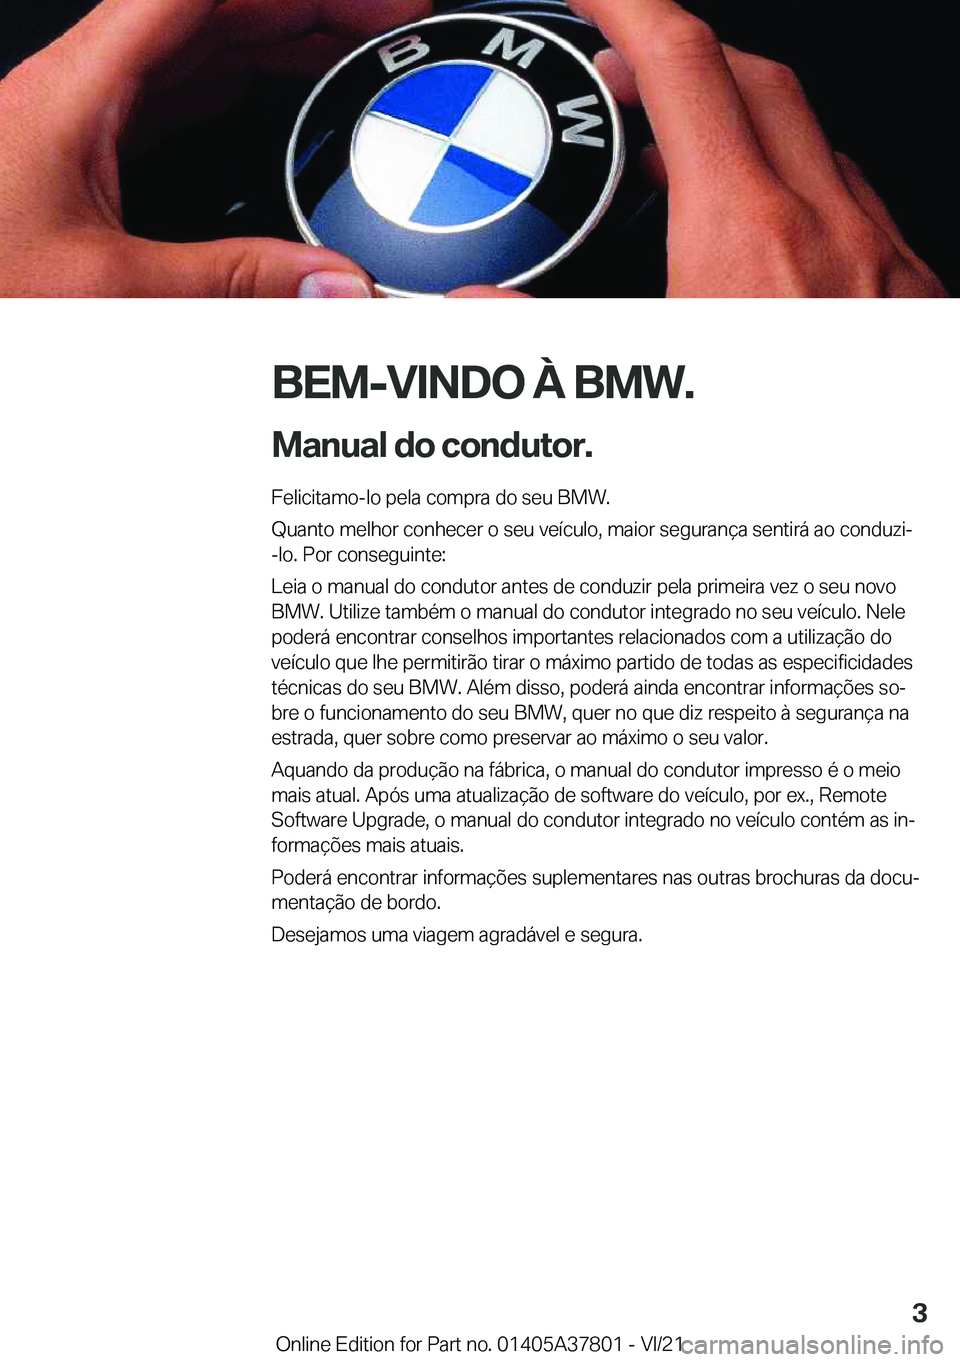 BMW X3 M 2022  Manual do condutor (in Portuguese) �B�E�M�-�V�I�N�D�O��À��B�M�W�.
�M�a�n�u�a�l��d�o��c�o�n�d�u�t�o�r�. �F�e�l�i�c�i�t�a�m�o�-�l�o��p�e�l�a��c�o�m�p�r�a��d�o��s�e�u��B�M�W�.
�Q�u�a�n�t�o��m�e�l�h�o�r��c�o�n�h�e�c�e�r��o��s